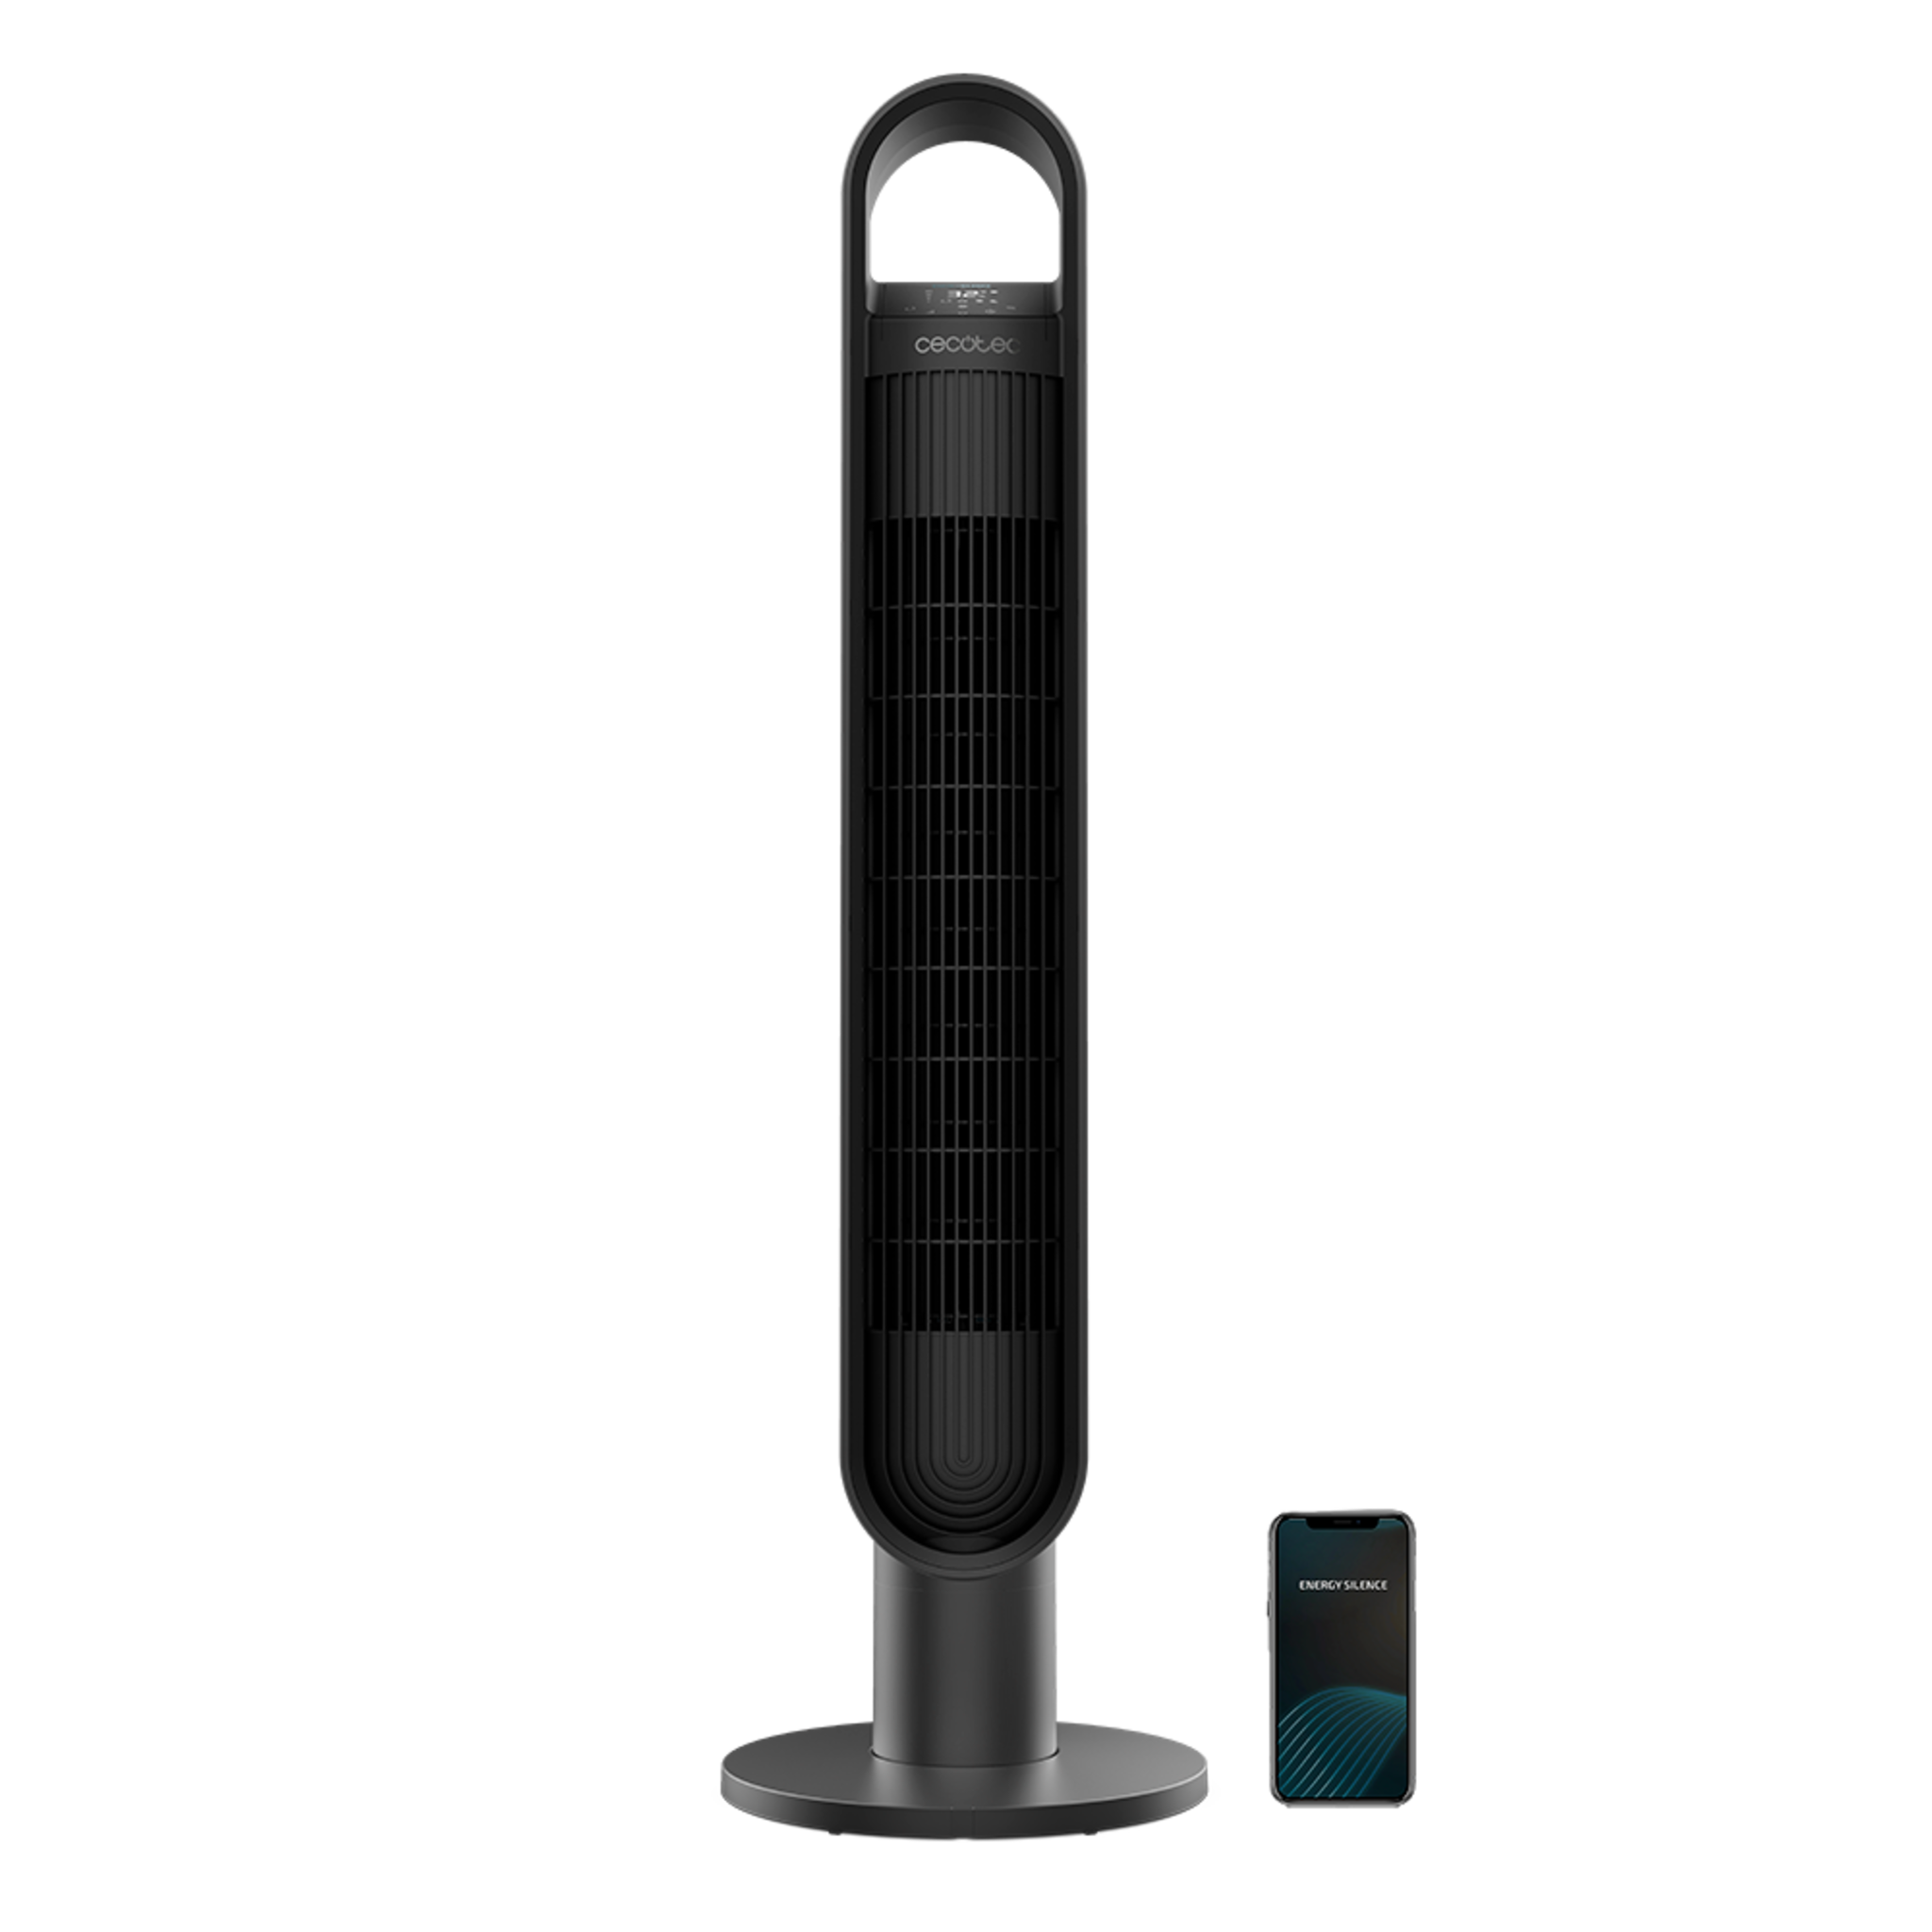 Ventilador de Torre con Mando a Distancia y Temporizador EnergySilence 9190 SkyLine Ionic Connected. 60W, Altura 40", 3 Velocidades, Oscilación automática, Control Wifi e Ionizador